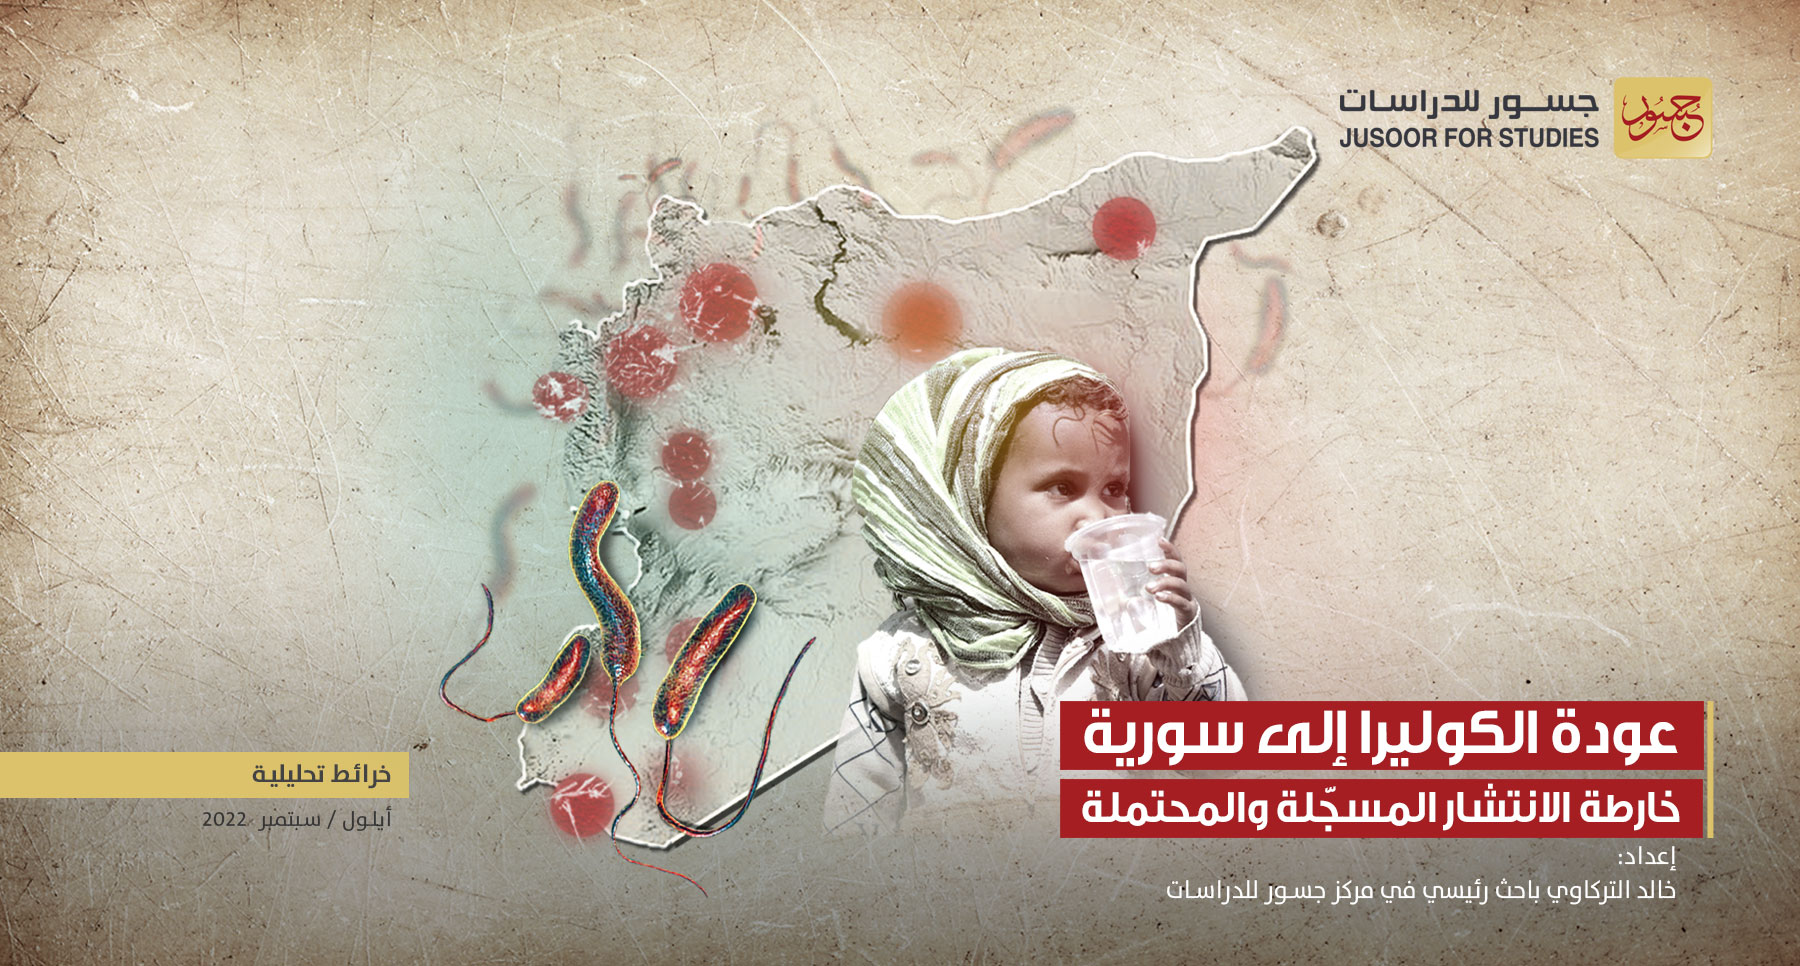 عودة الكوليرا إلى سورية.. خارطة الانتشار المسجّلة والمحتملة